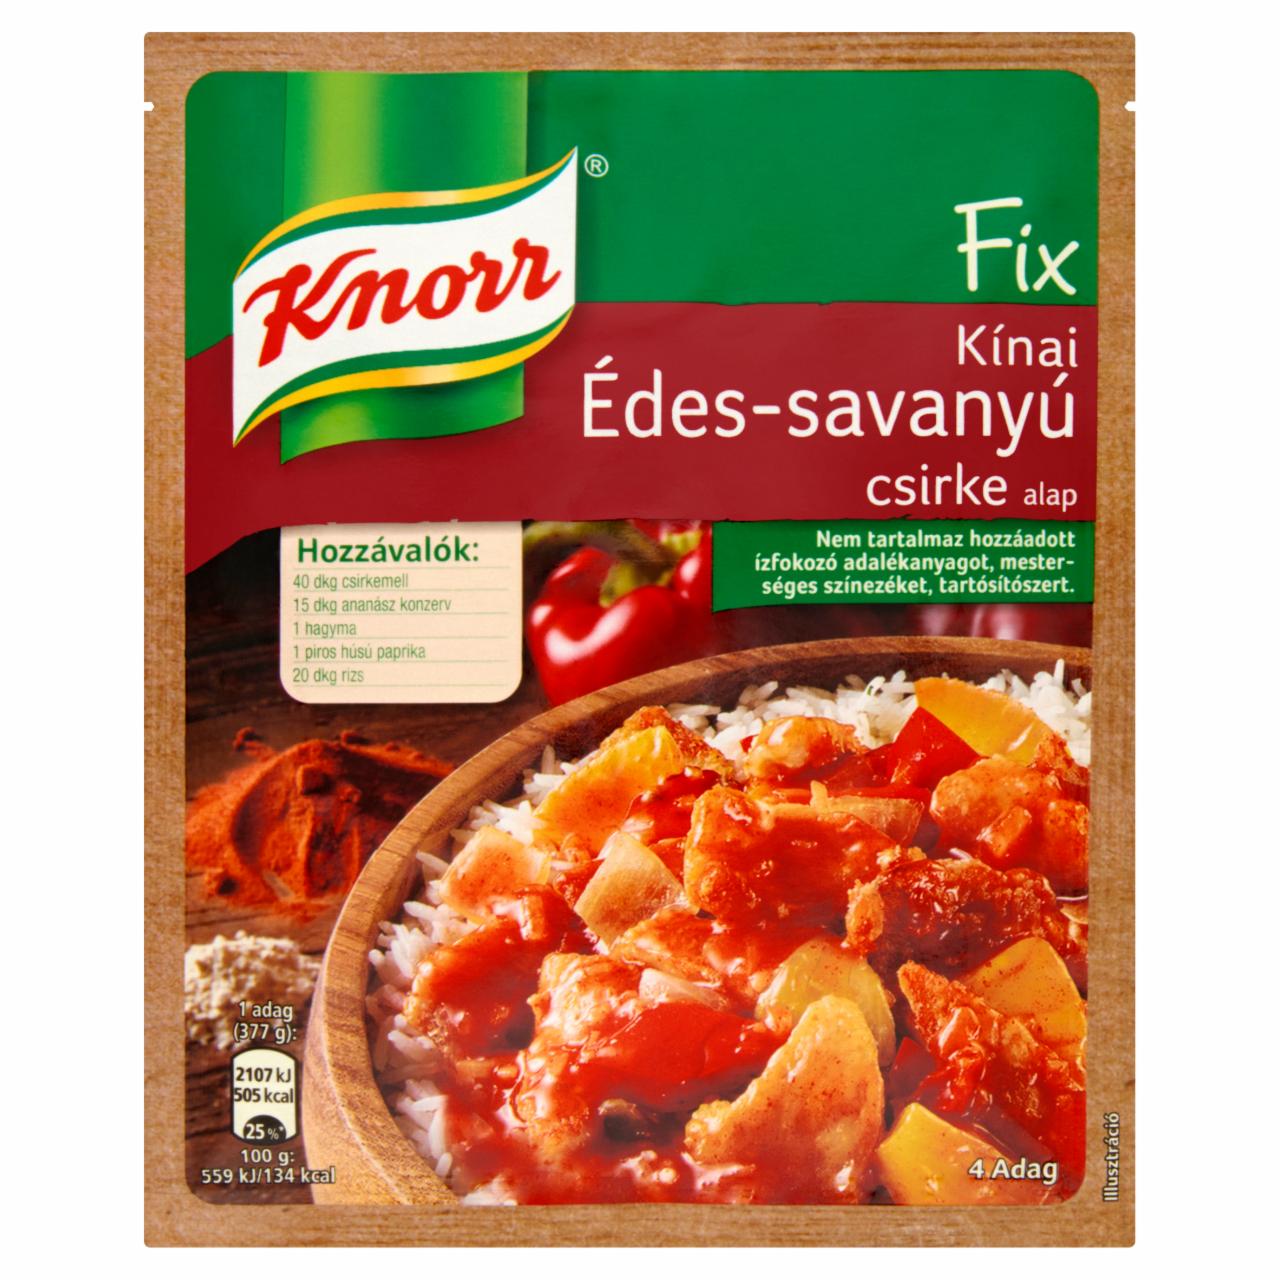 Képek - Knorr kínai édes-savanyú csirke alap 66 g